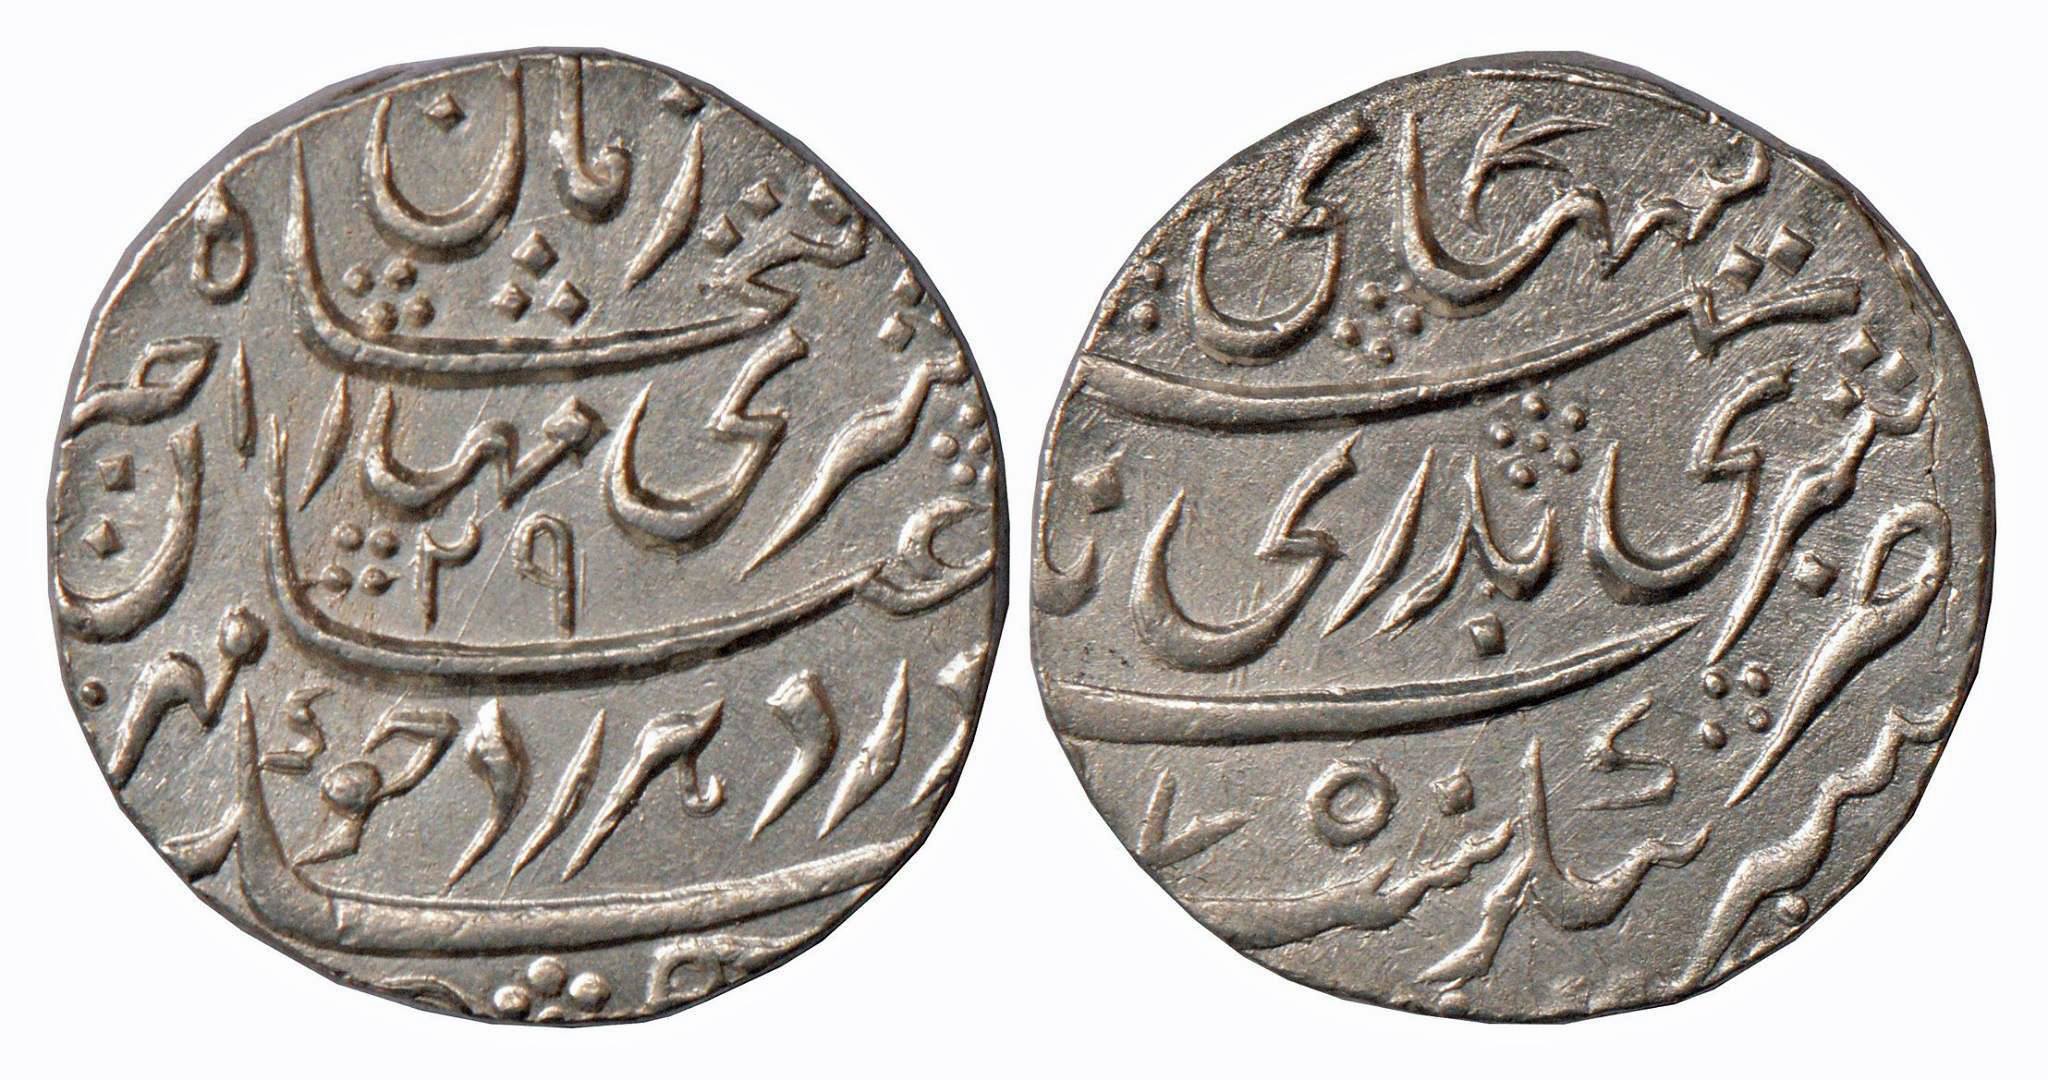 फतेशाहचा १६९३ सालातला फारसी रुपया